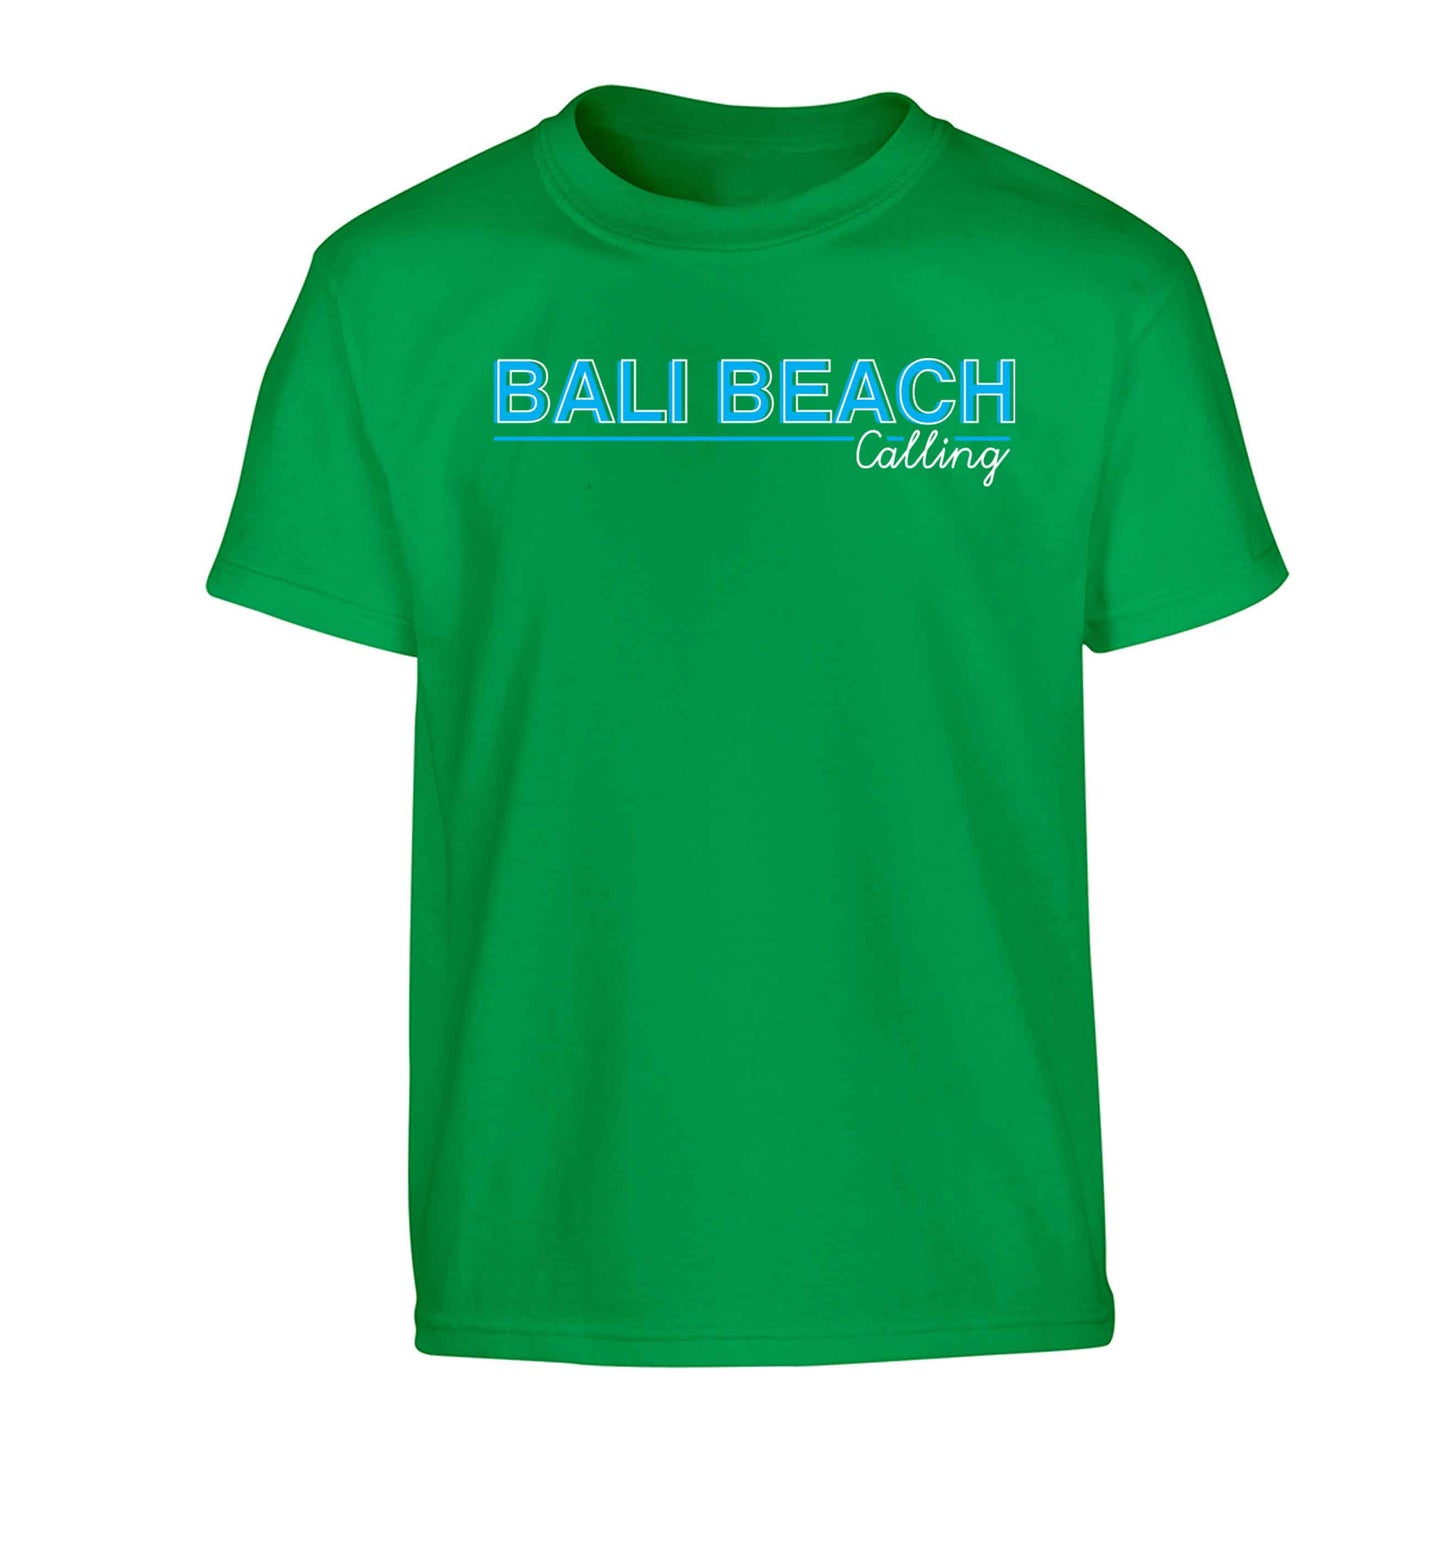 Bali beach calling Children's green Tshirt 12-13 Years